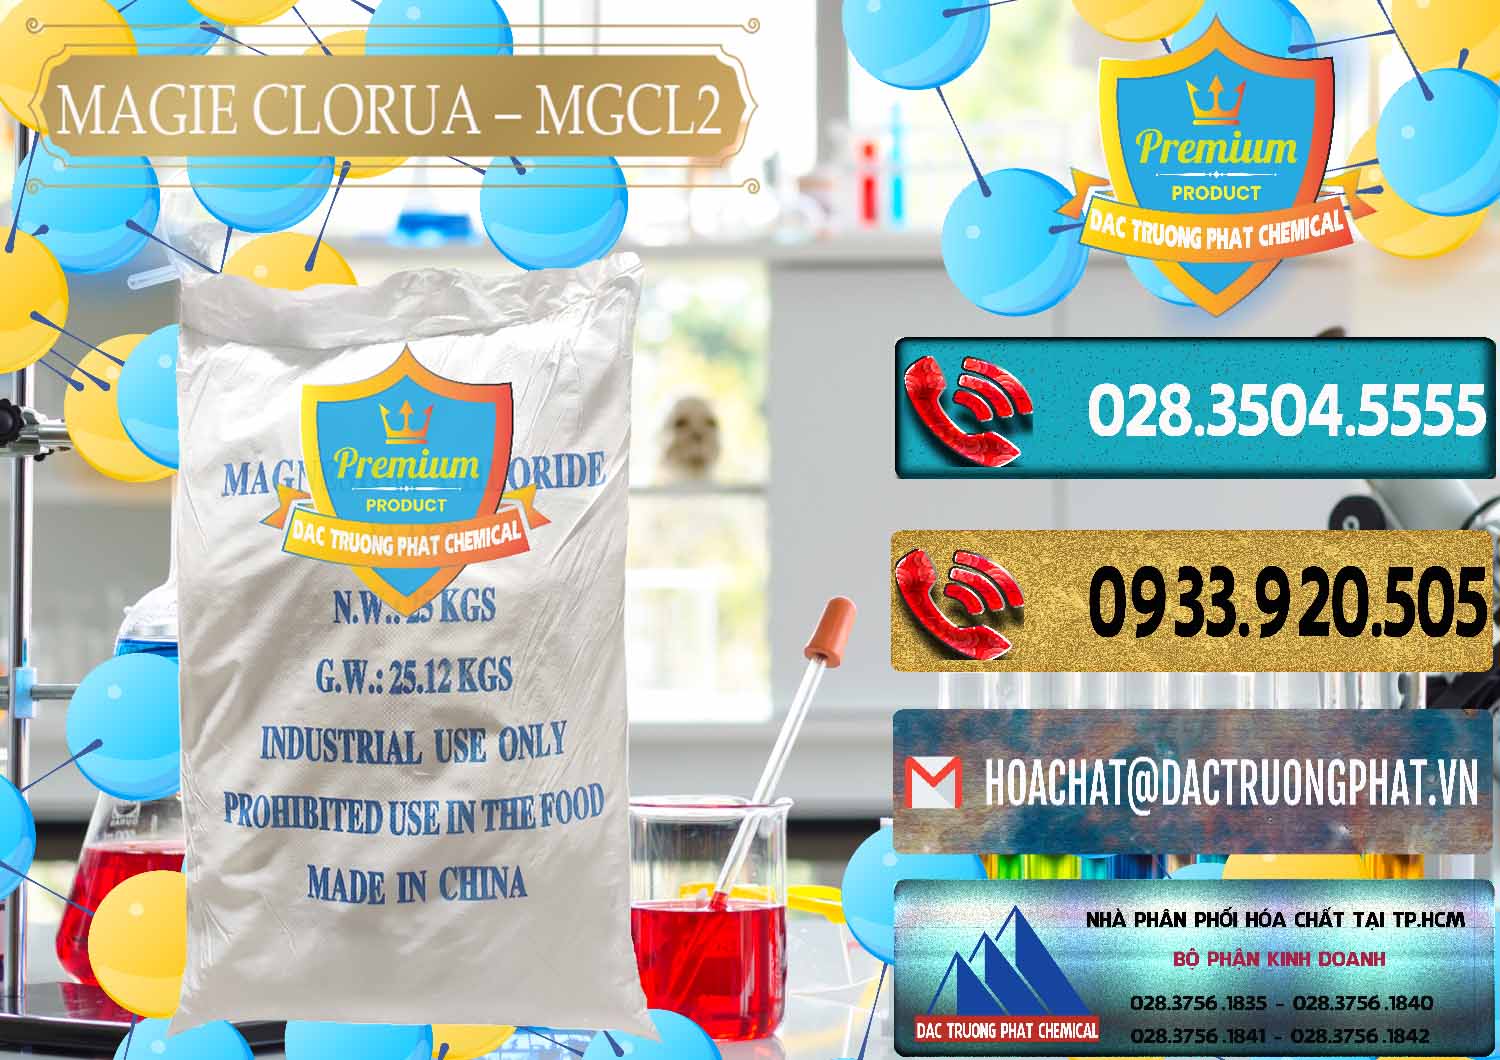 Nơi chuyên bán _ cung cấp Magie Clorua – MGCL2 96% Dạng Vảy Trung Quốc China - 0091 - Công ty chuyên kinh doanh ( phân phối ) hóa chất tại TP.HCM - hoachatdetnhuom.com